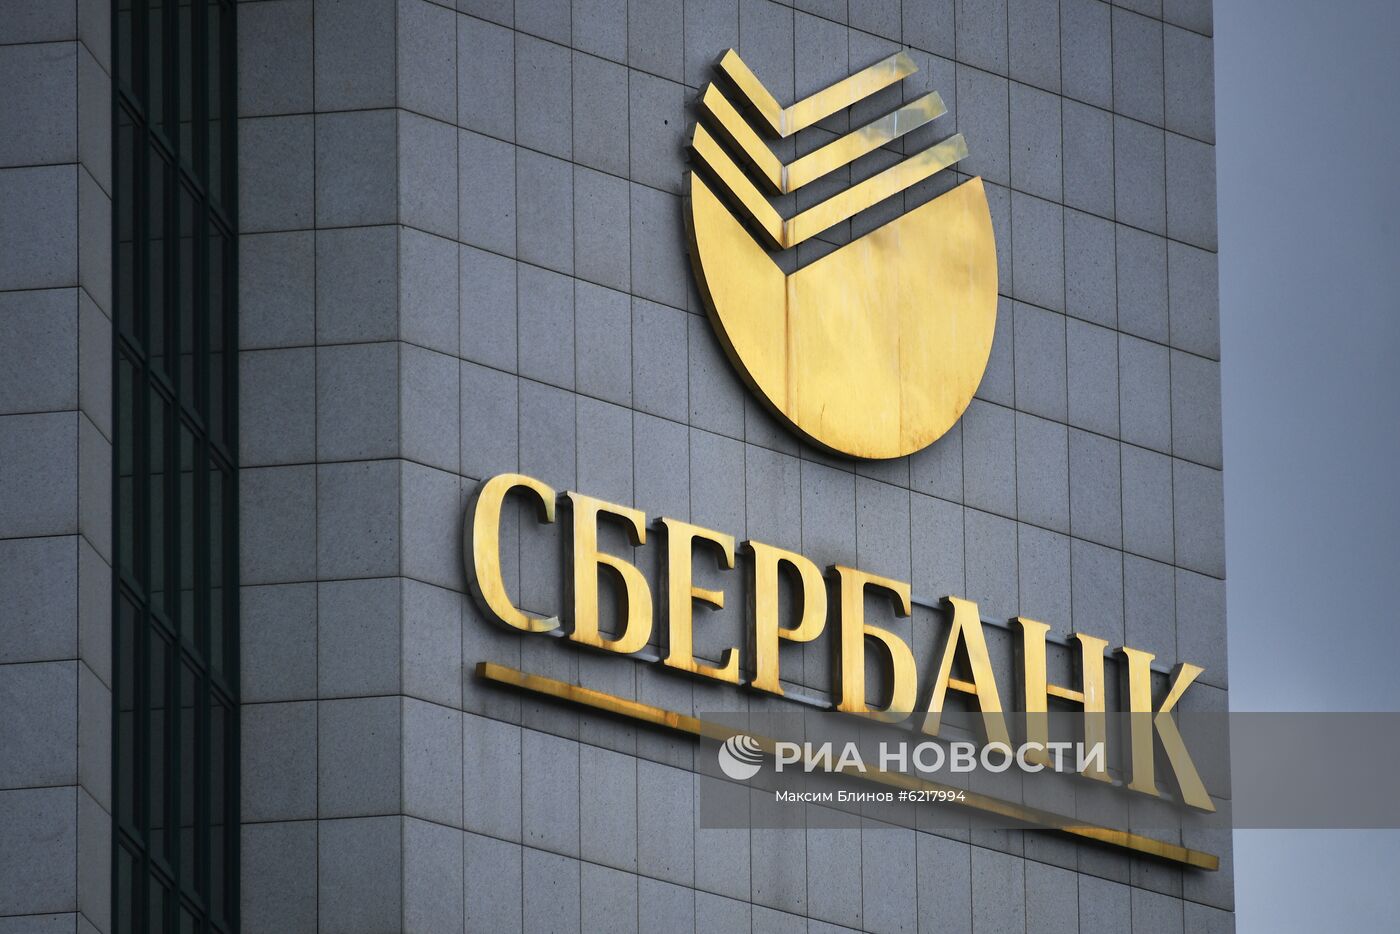 Правительство РФ выкупило у ЦБ пакет акций Сбербанка